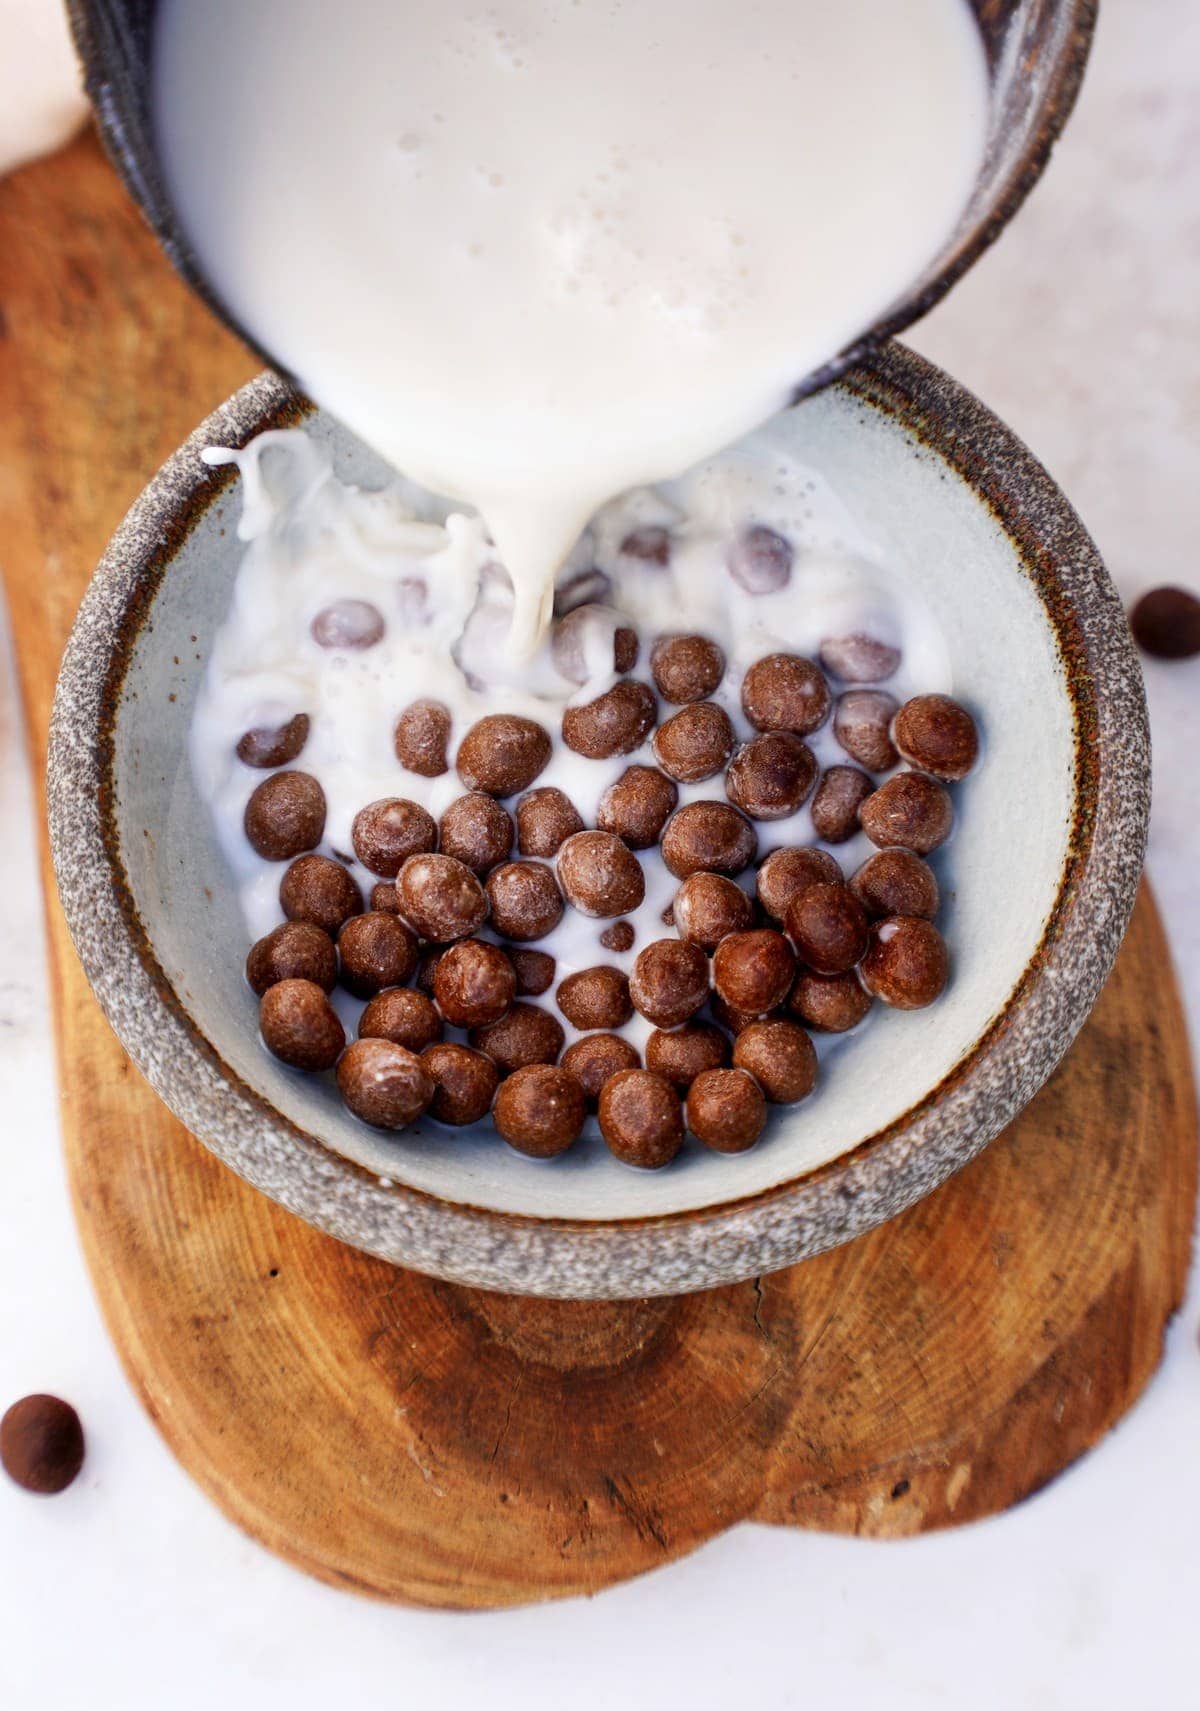 Pflanzenmilch wird in eine Schüssel mit selbstgemachten Schoko-Cerealien (Choco Pops) gegossen